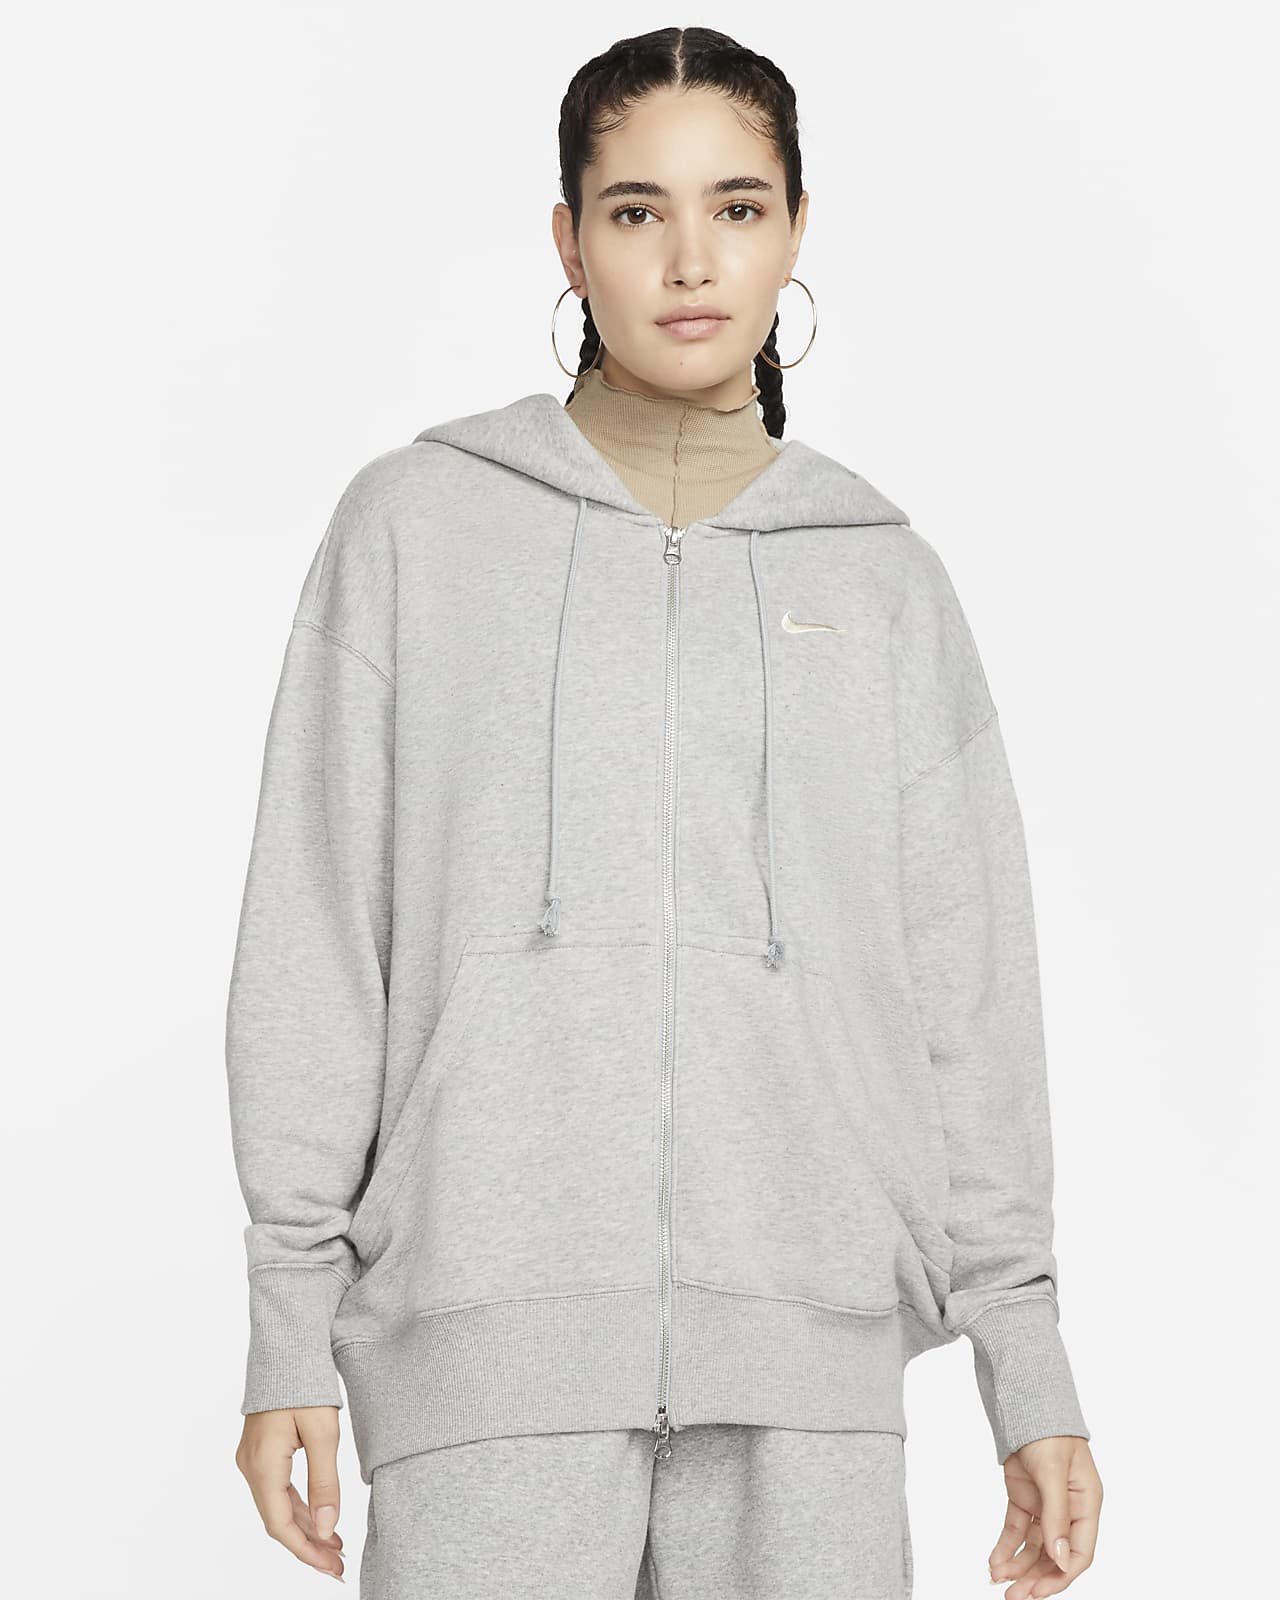 Γυναικεία μπλούζα με κουκούλα και φερμουάρ σε όλο το μήκος σε φαρδιά γραμμή Nike Sportswear Phoenix Fleece